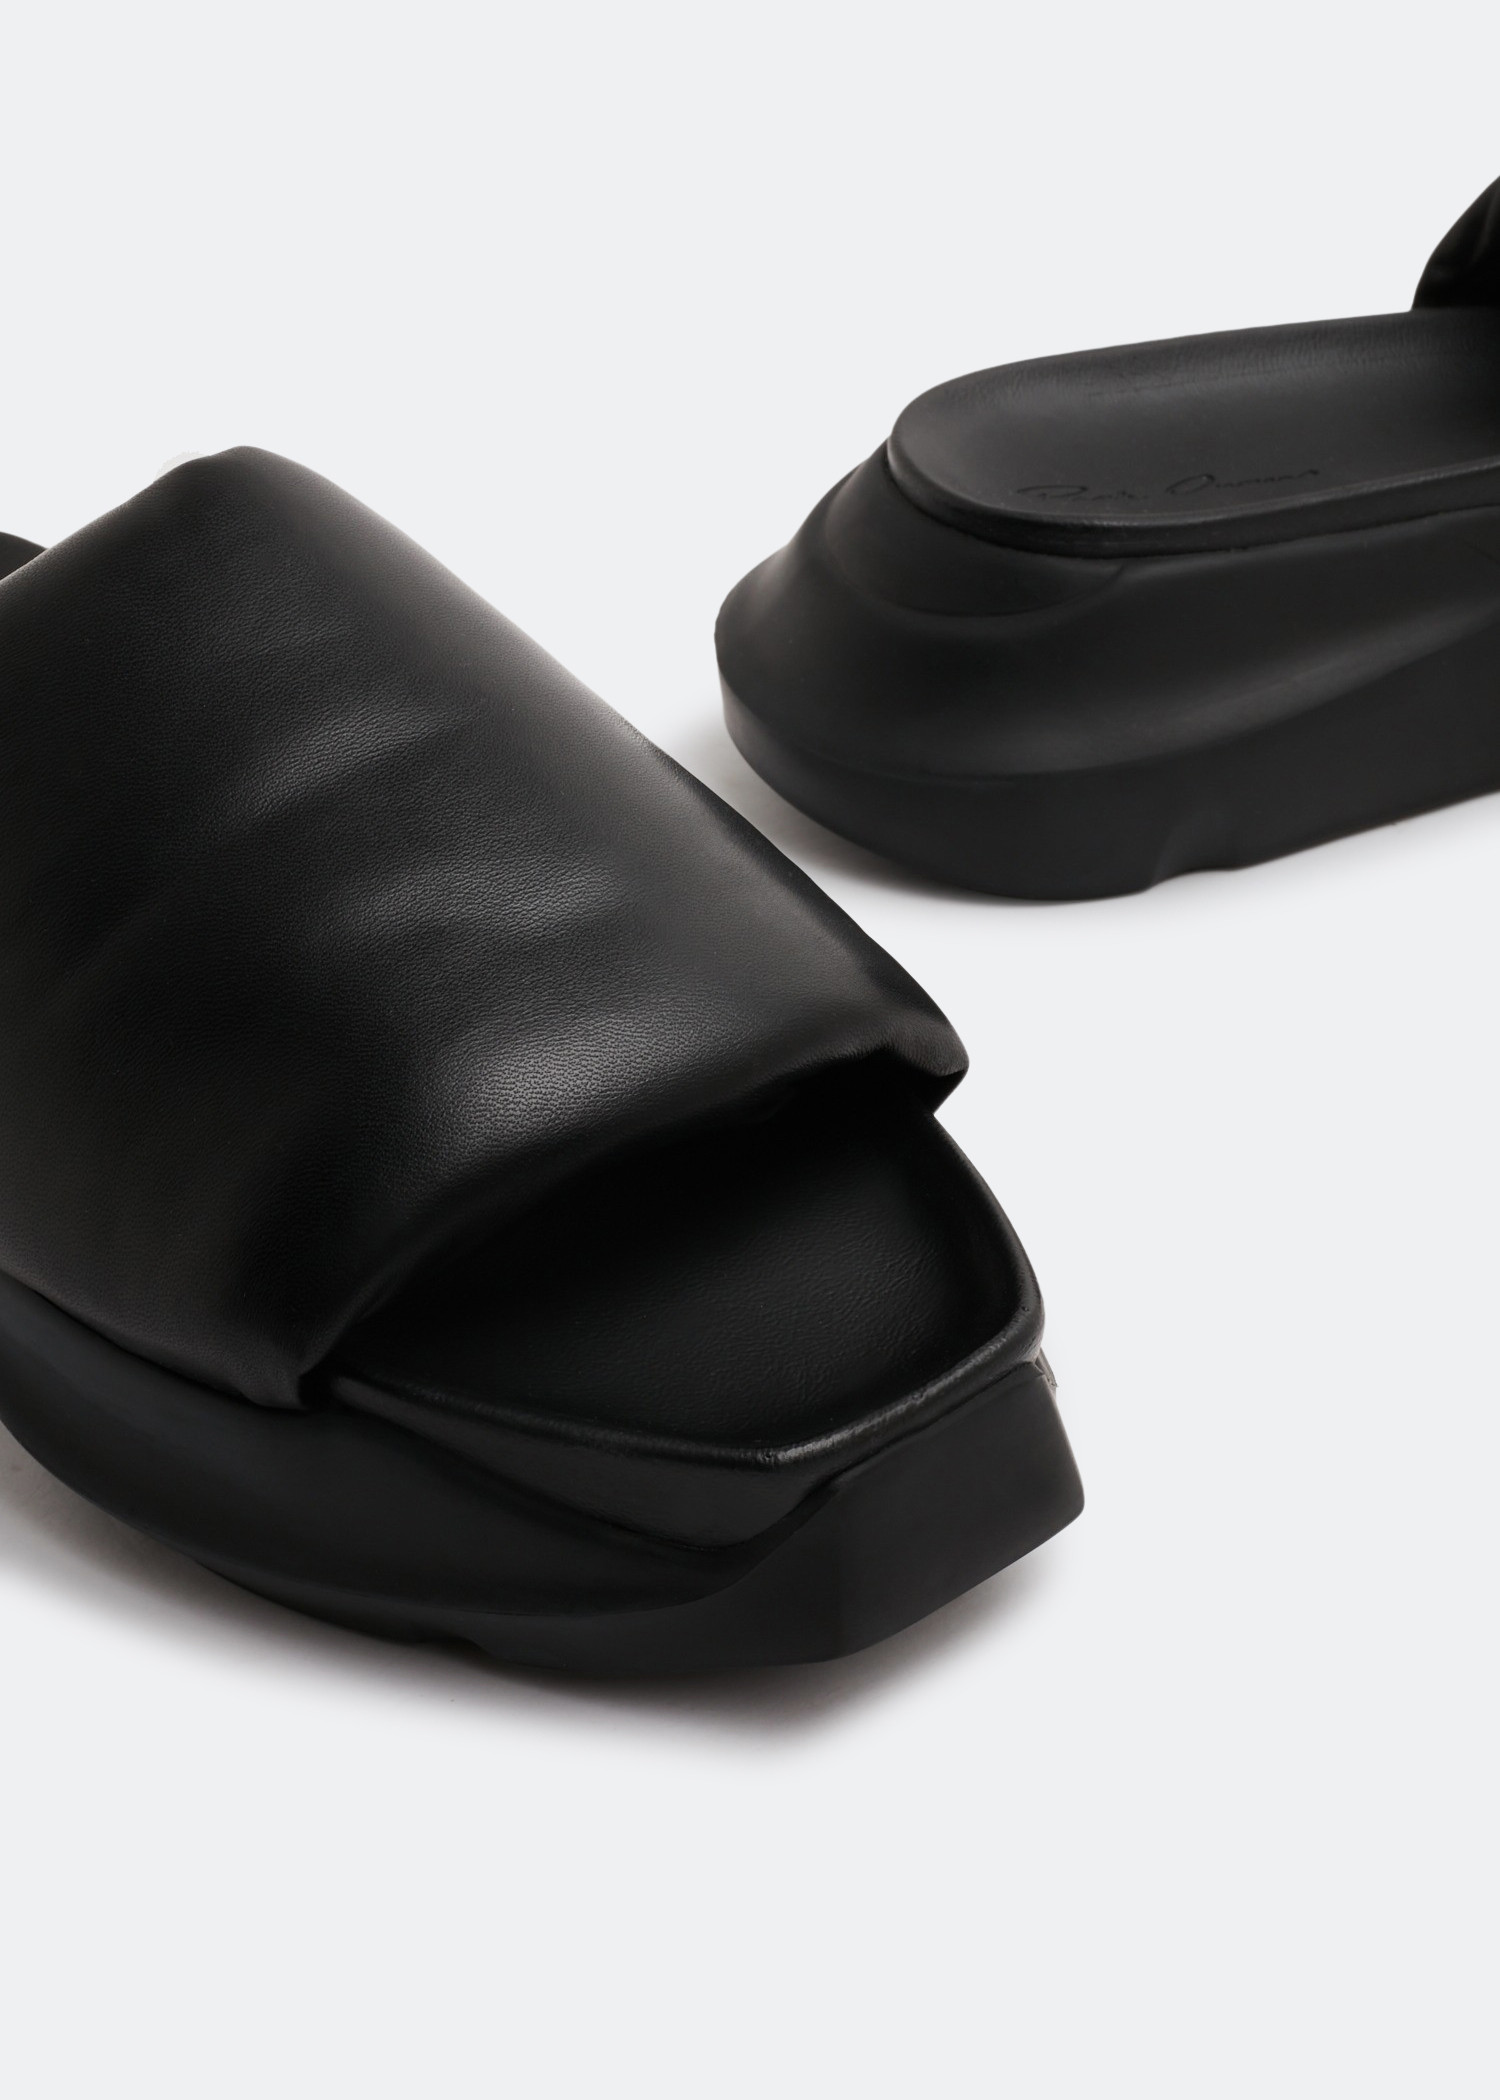 Rick Owens Geth puffer slides for Men - Black in KSA | Level Shoes